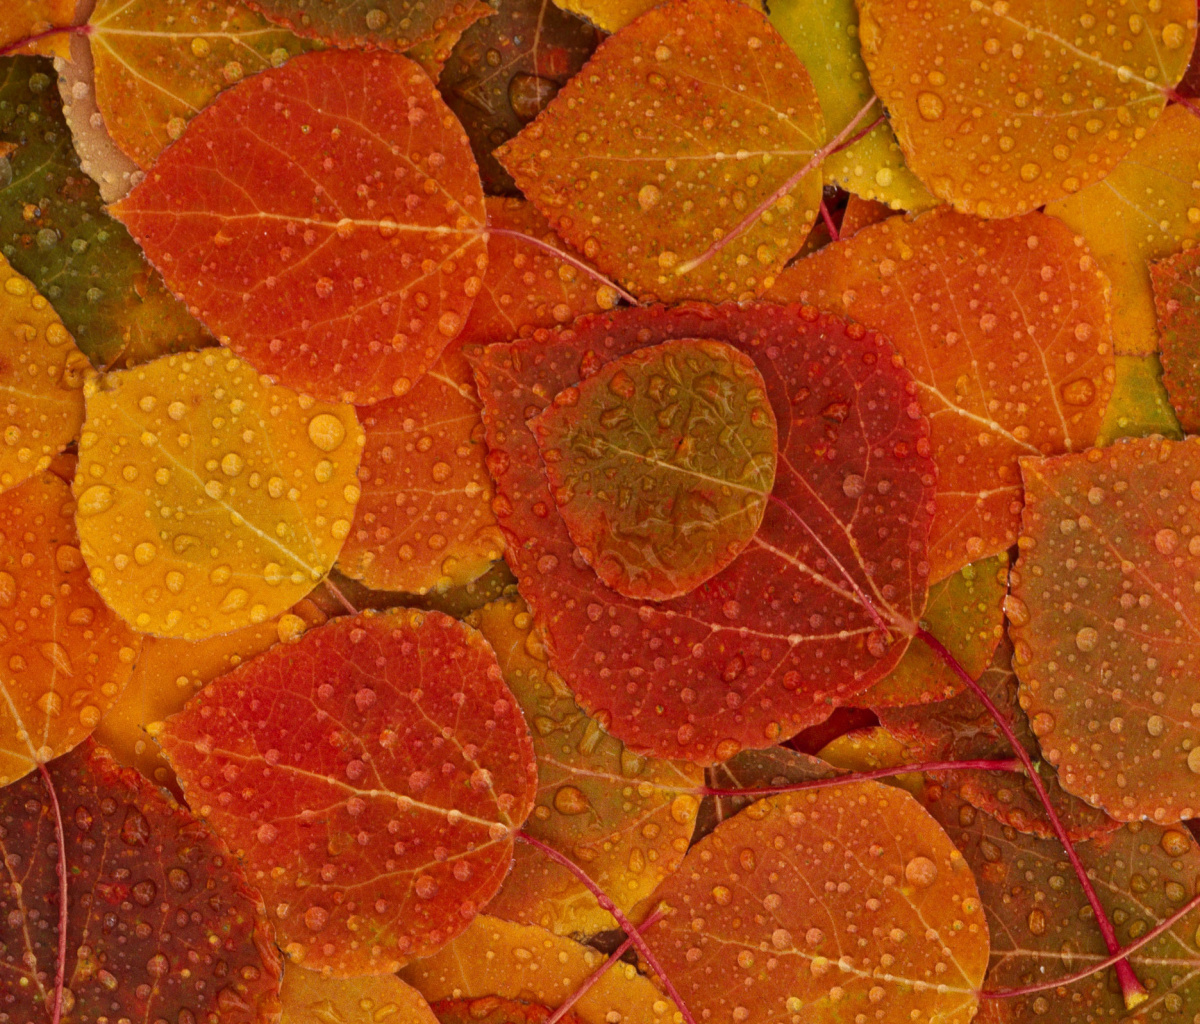 Das Autumn leaves with rain drops Wallpaper 1200x1024